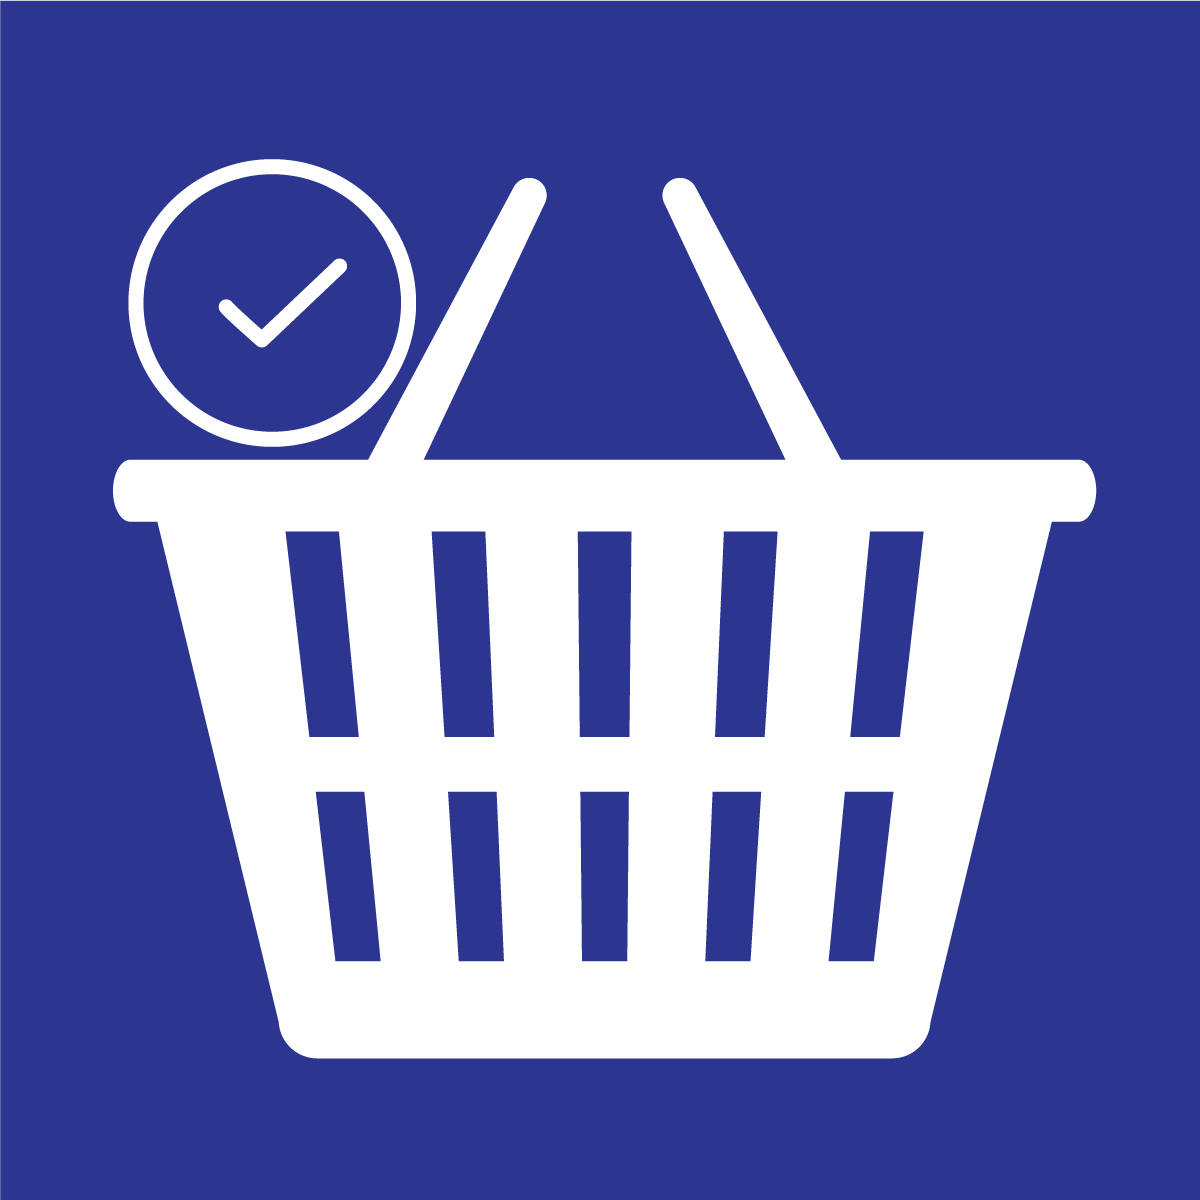 Leadify ‑ COD Order Form Shopify App